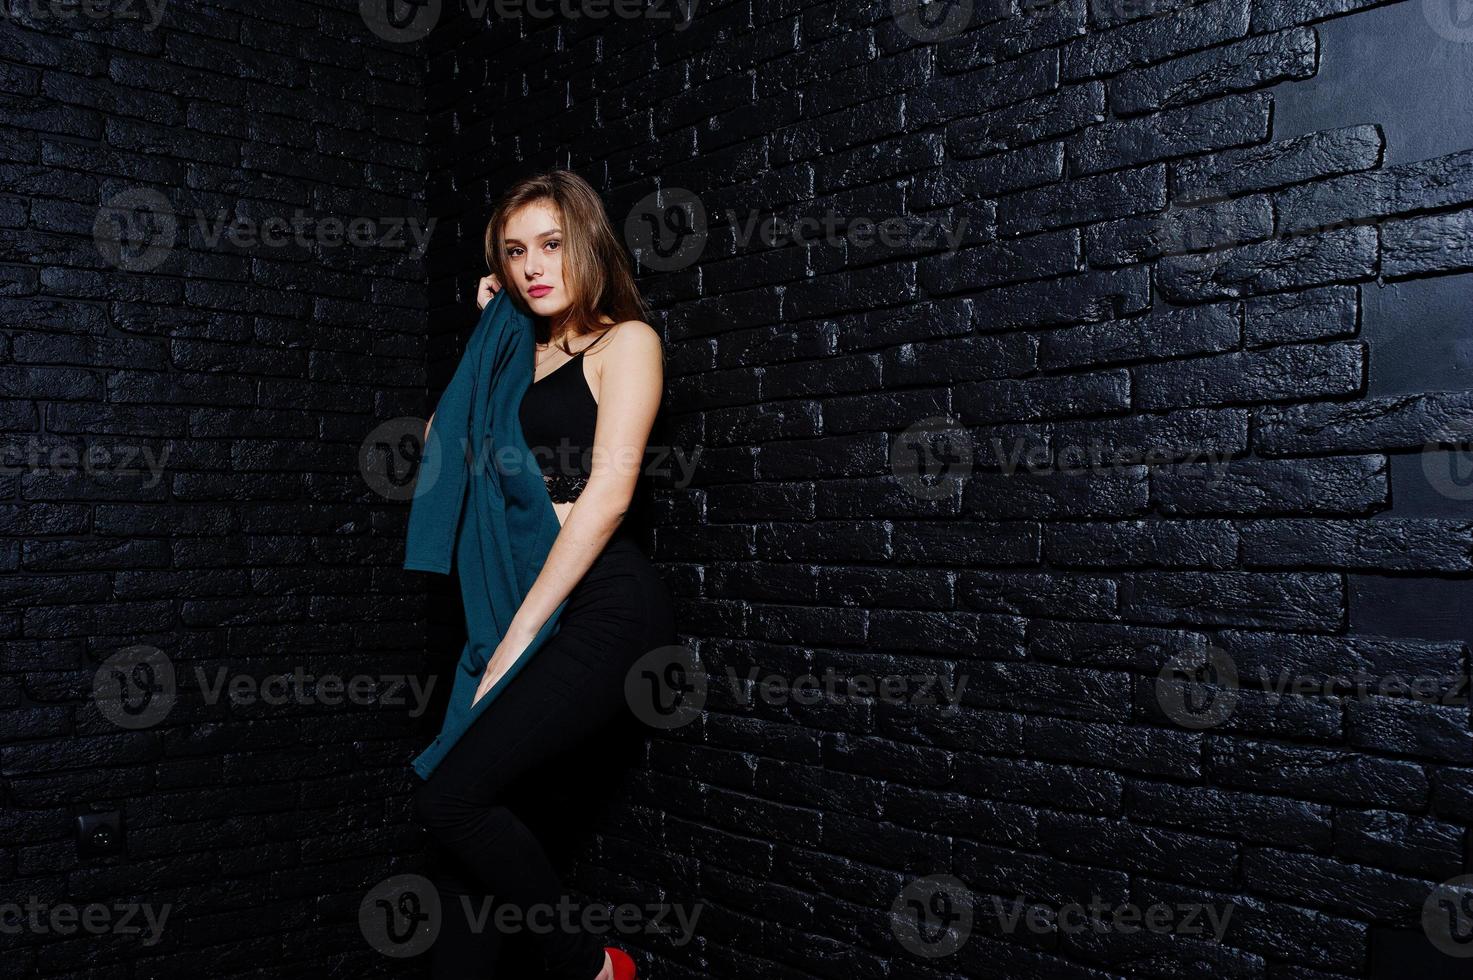 hermosa chica morena vestida de negro, posando en el estudio contra la pared de ladrillo oscuro. retrato de modelo de estudio. foto